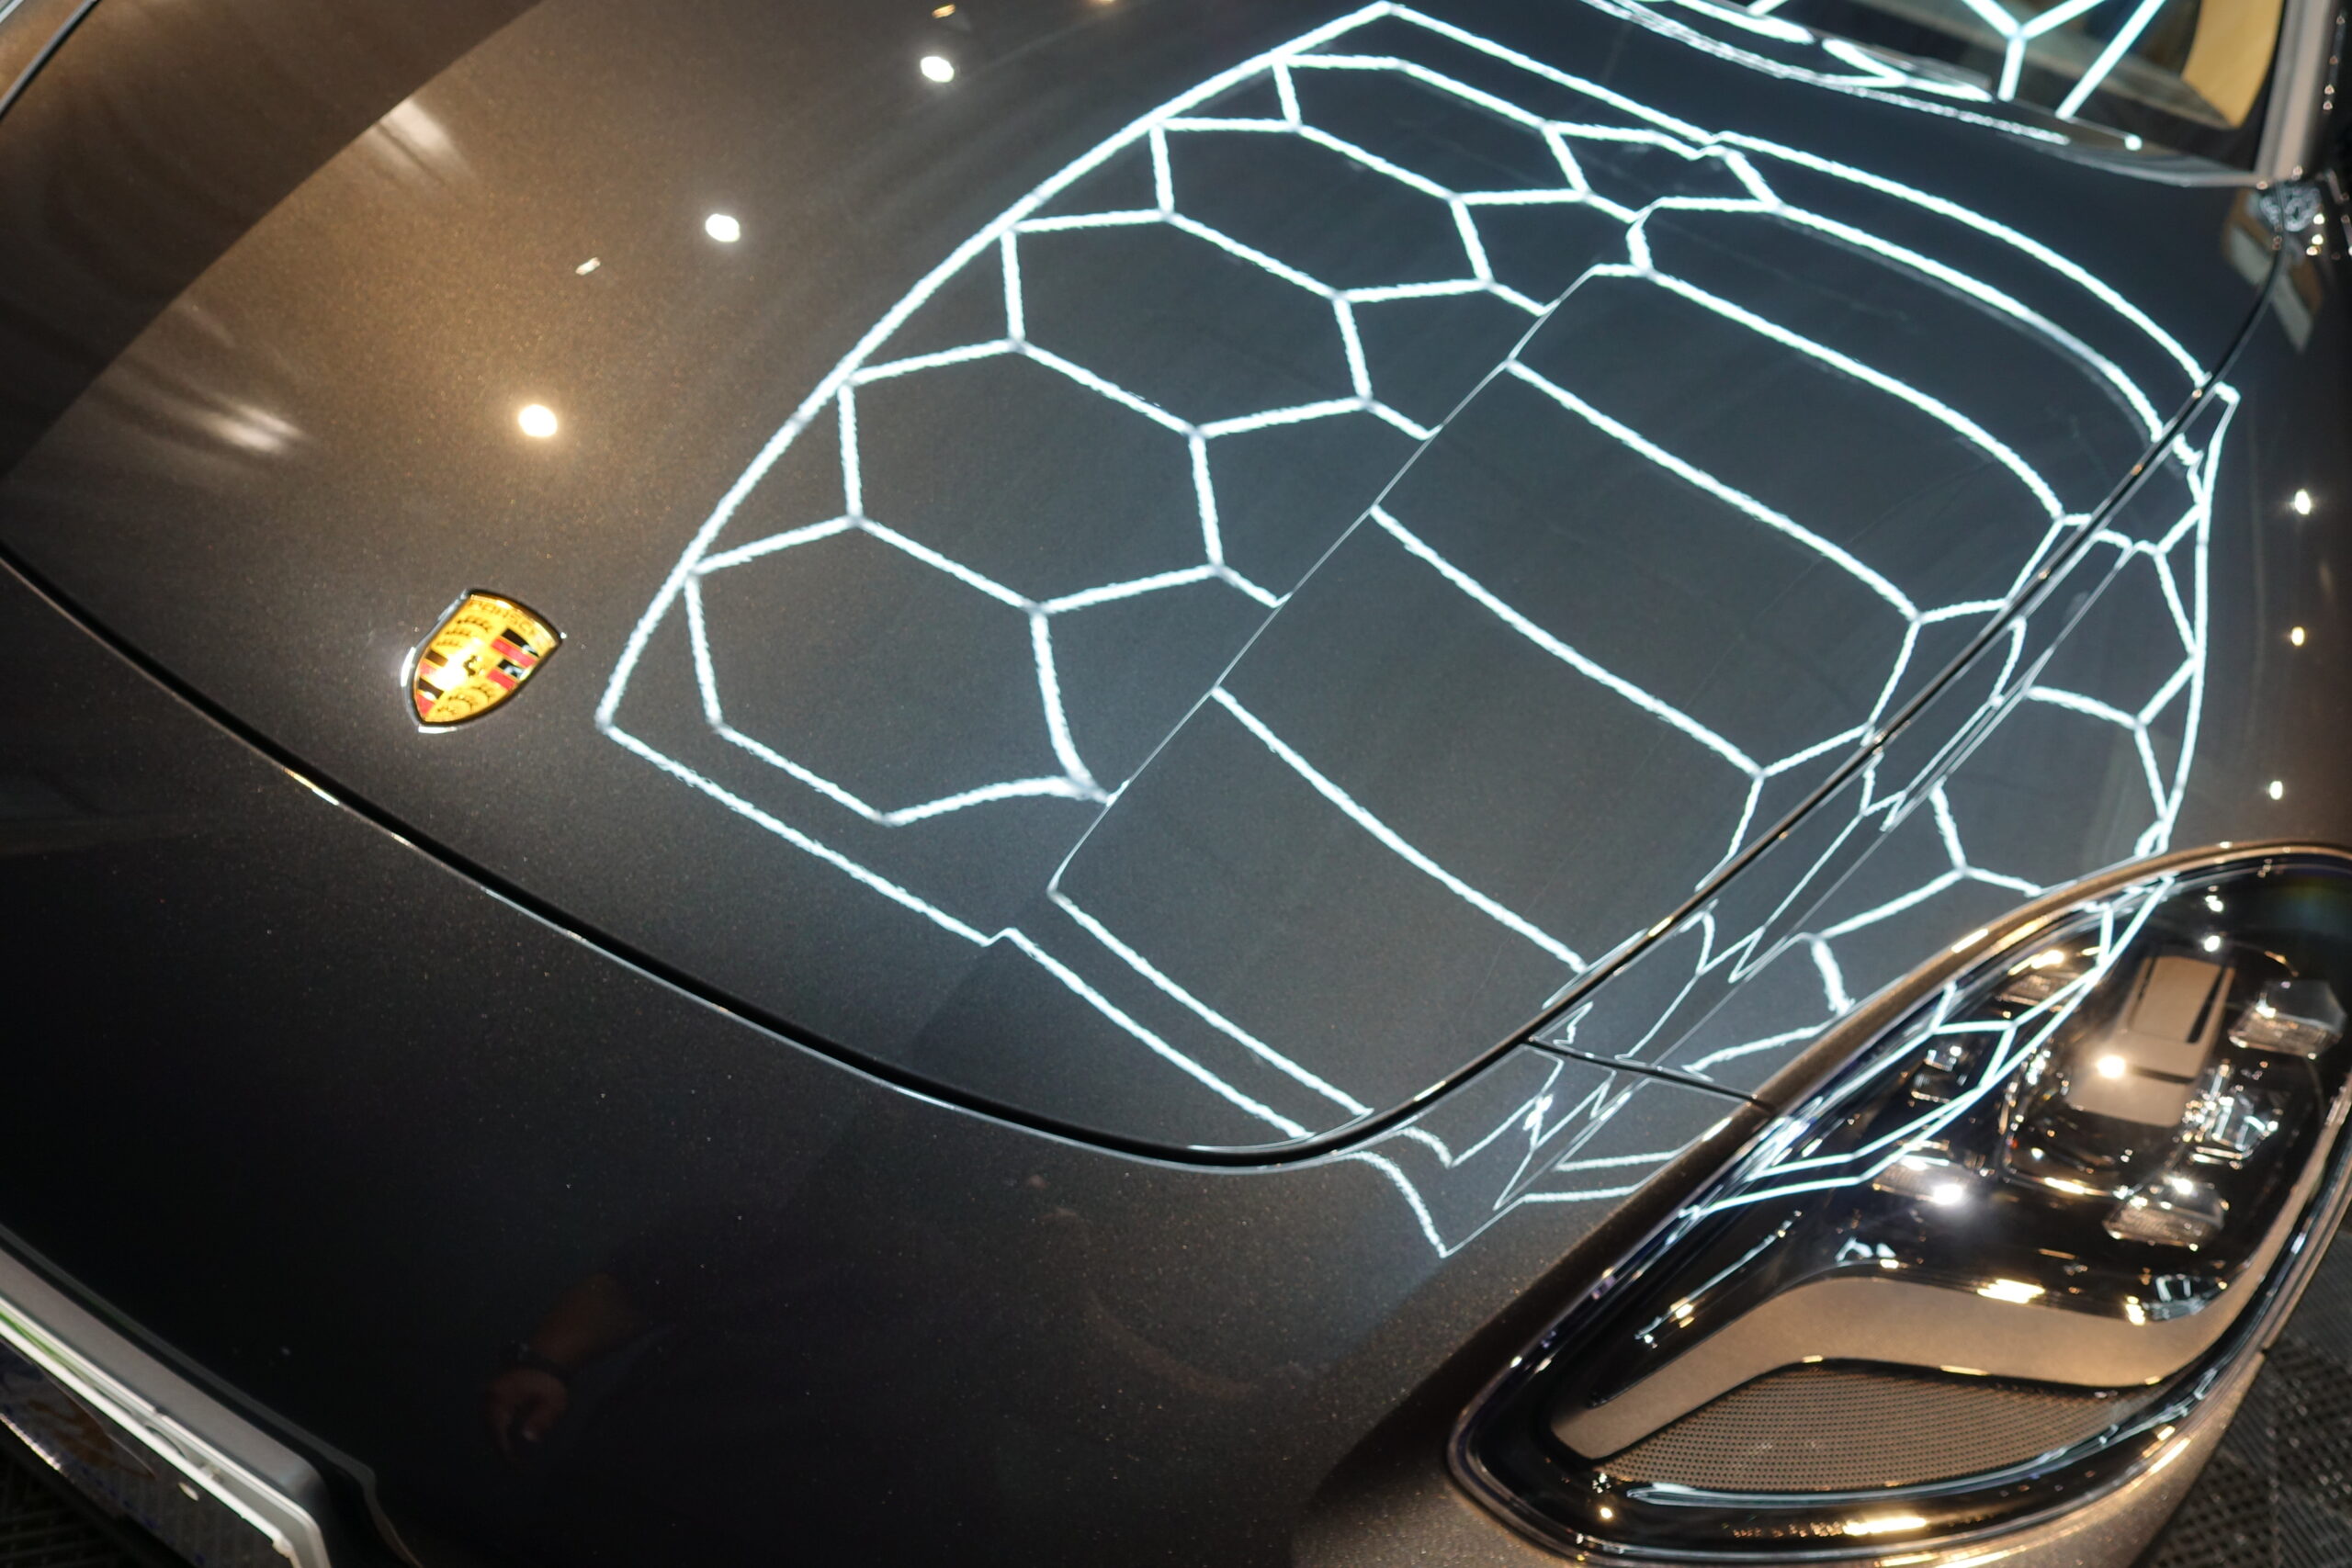 ポルシェ パナメーラ 新車以上の輝きへ 経年車にセラミックコーティング施工 宮崎のカーコーティング専門店